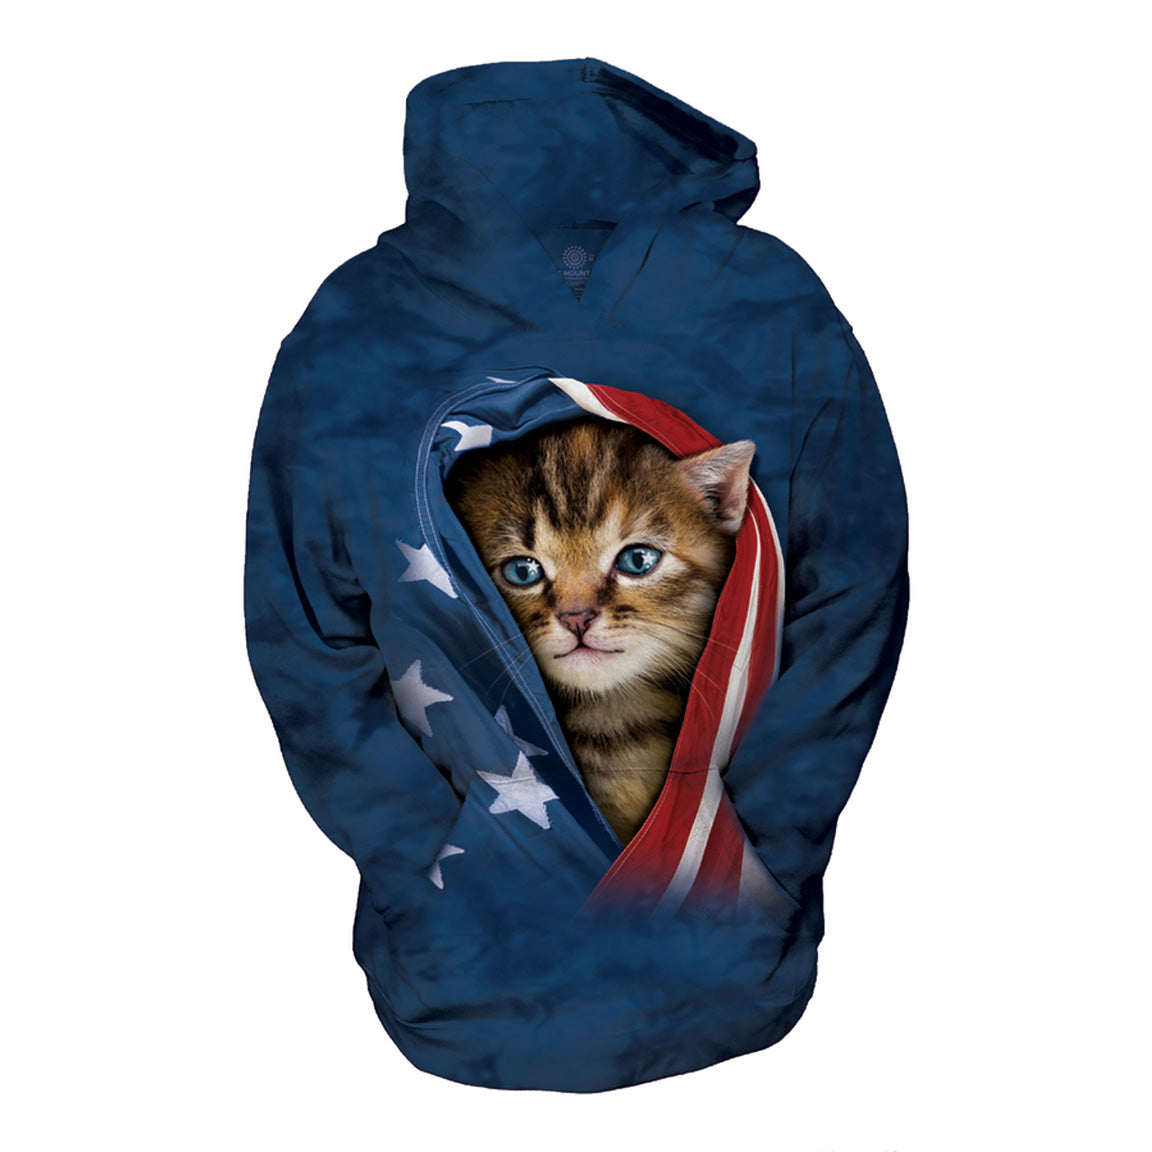 Patriotic Kitten - Kids' Unisex Hoodie Sweatshirt